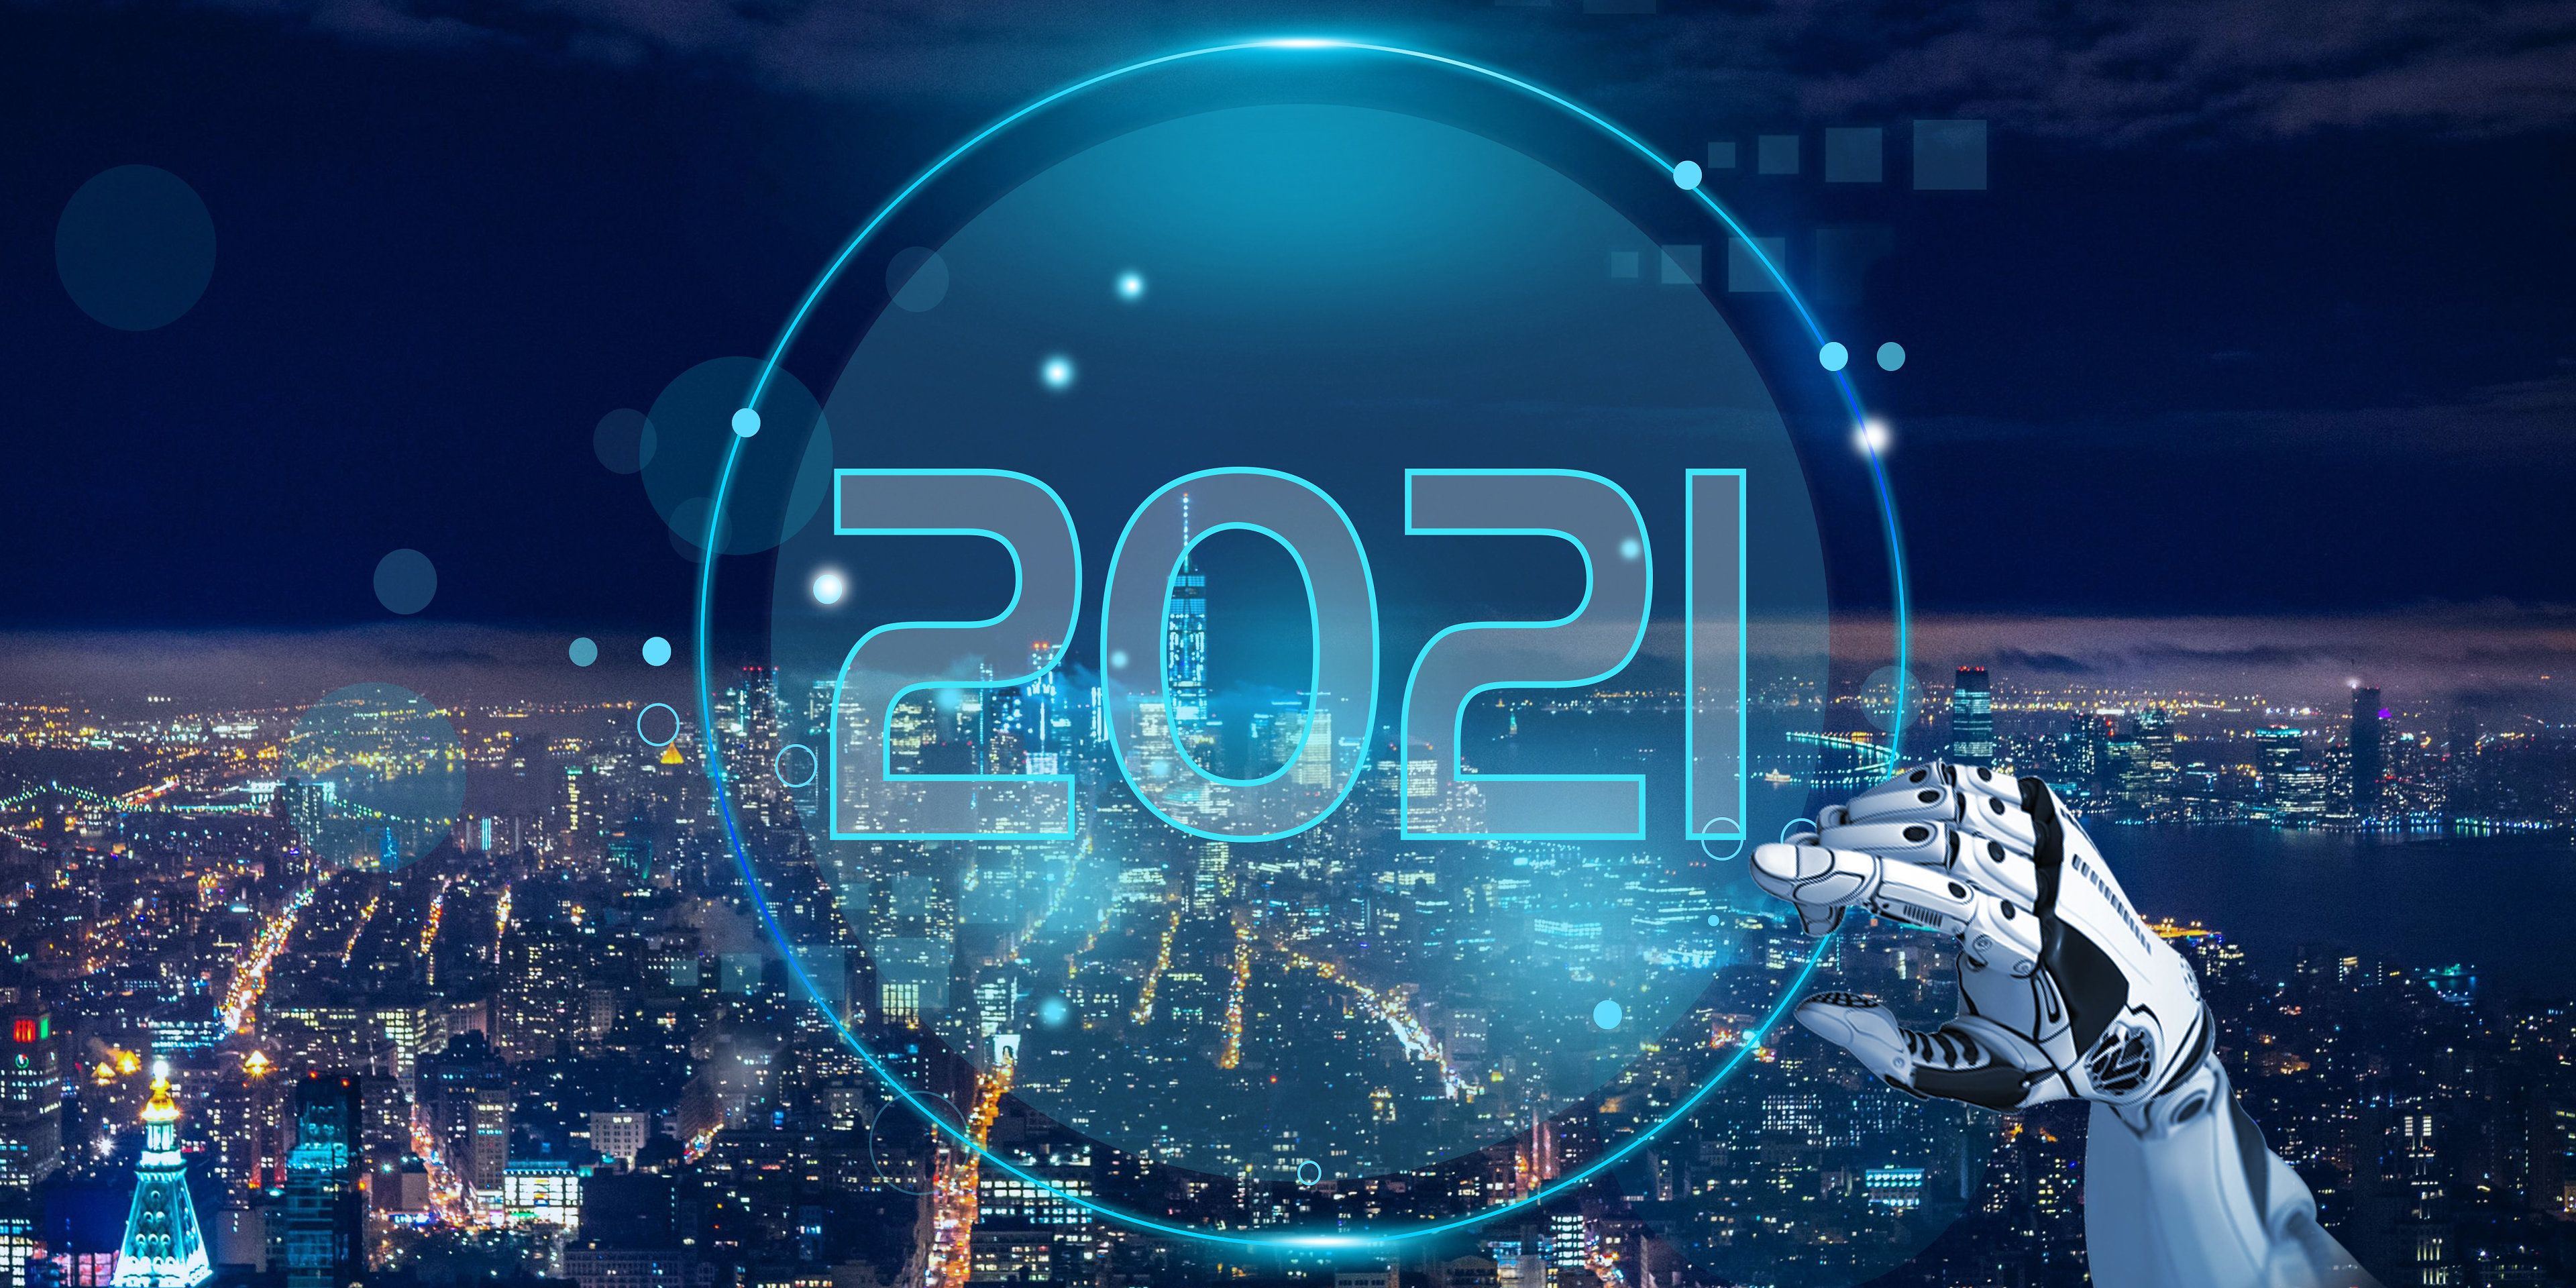 祝贺博雅工道、博清科技、三帝科技 入选2020年先进制造与自动化行业潜力10强